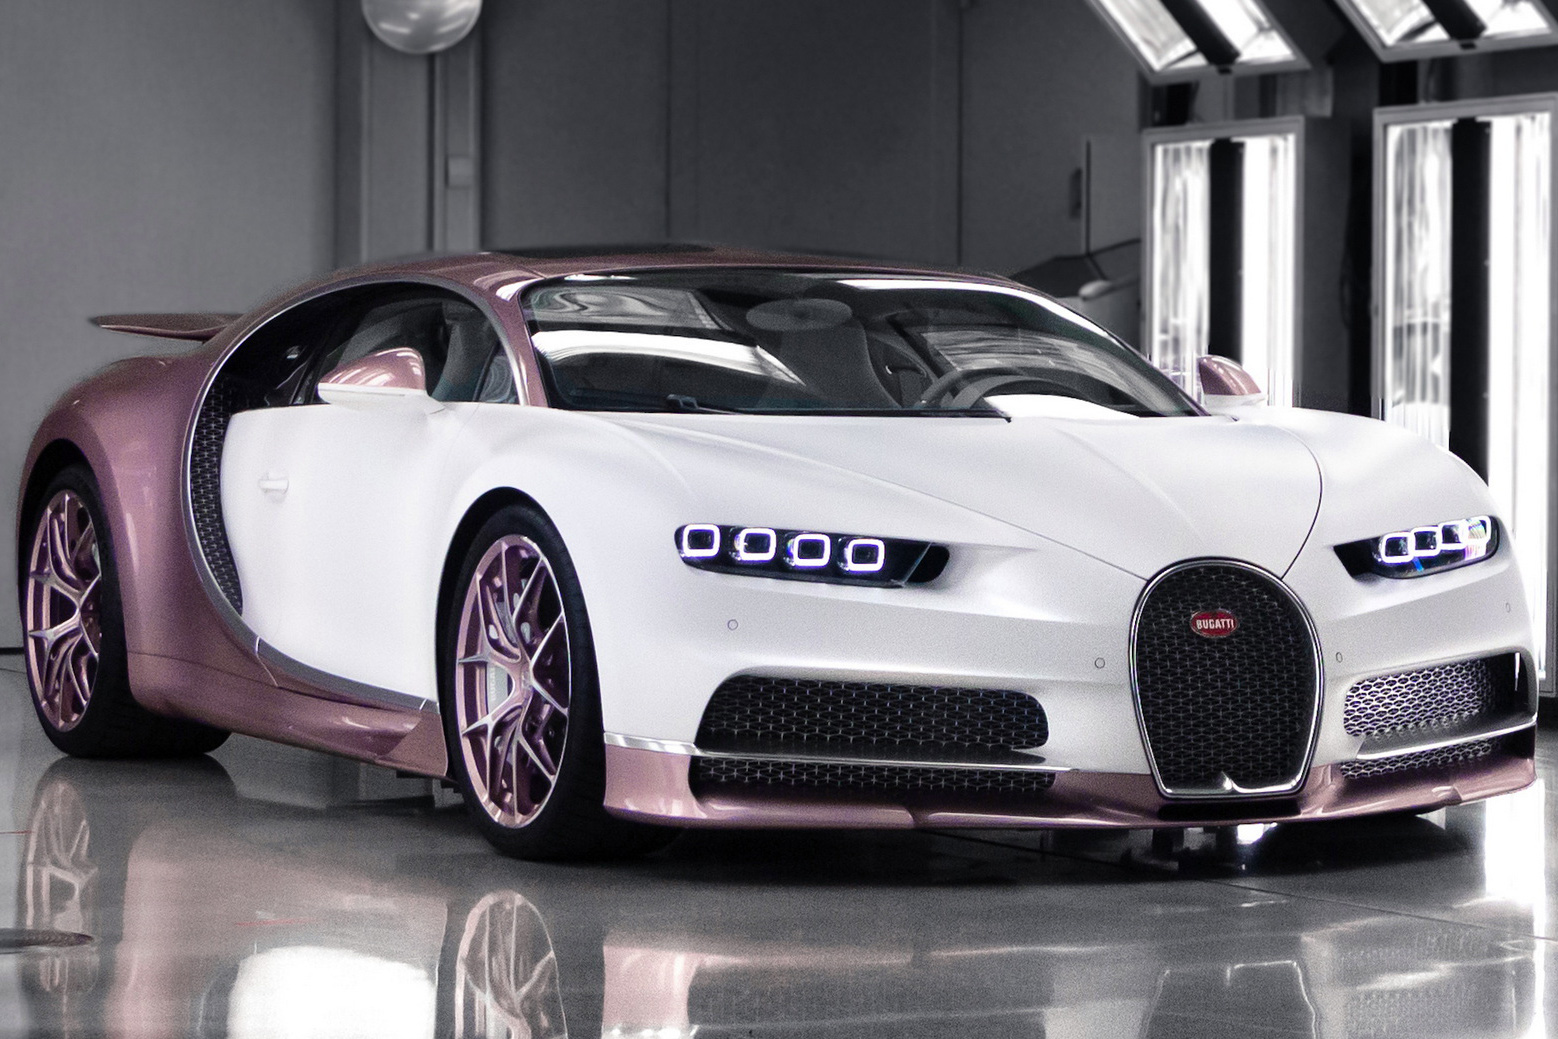 Góc ông chồng của năm: Tặng hẳn cho vợ siêu xe Bugatti Chiron độc nhất vô nhị trị giá gần 3,4 triệu USD nhân dịp Valentine